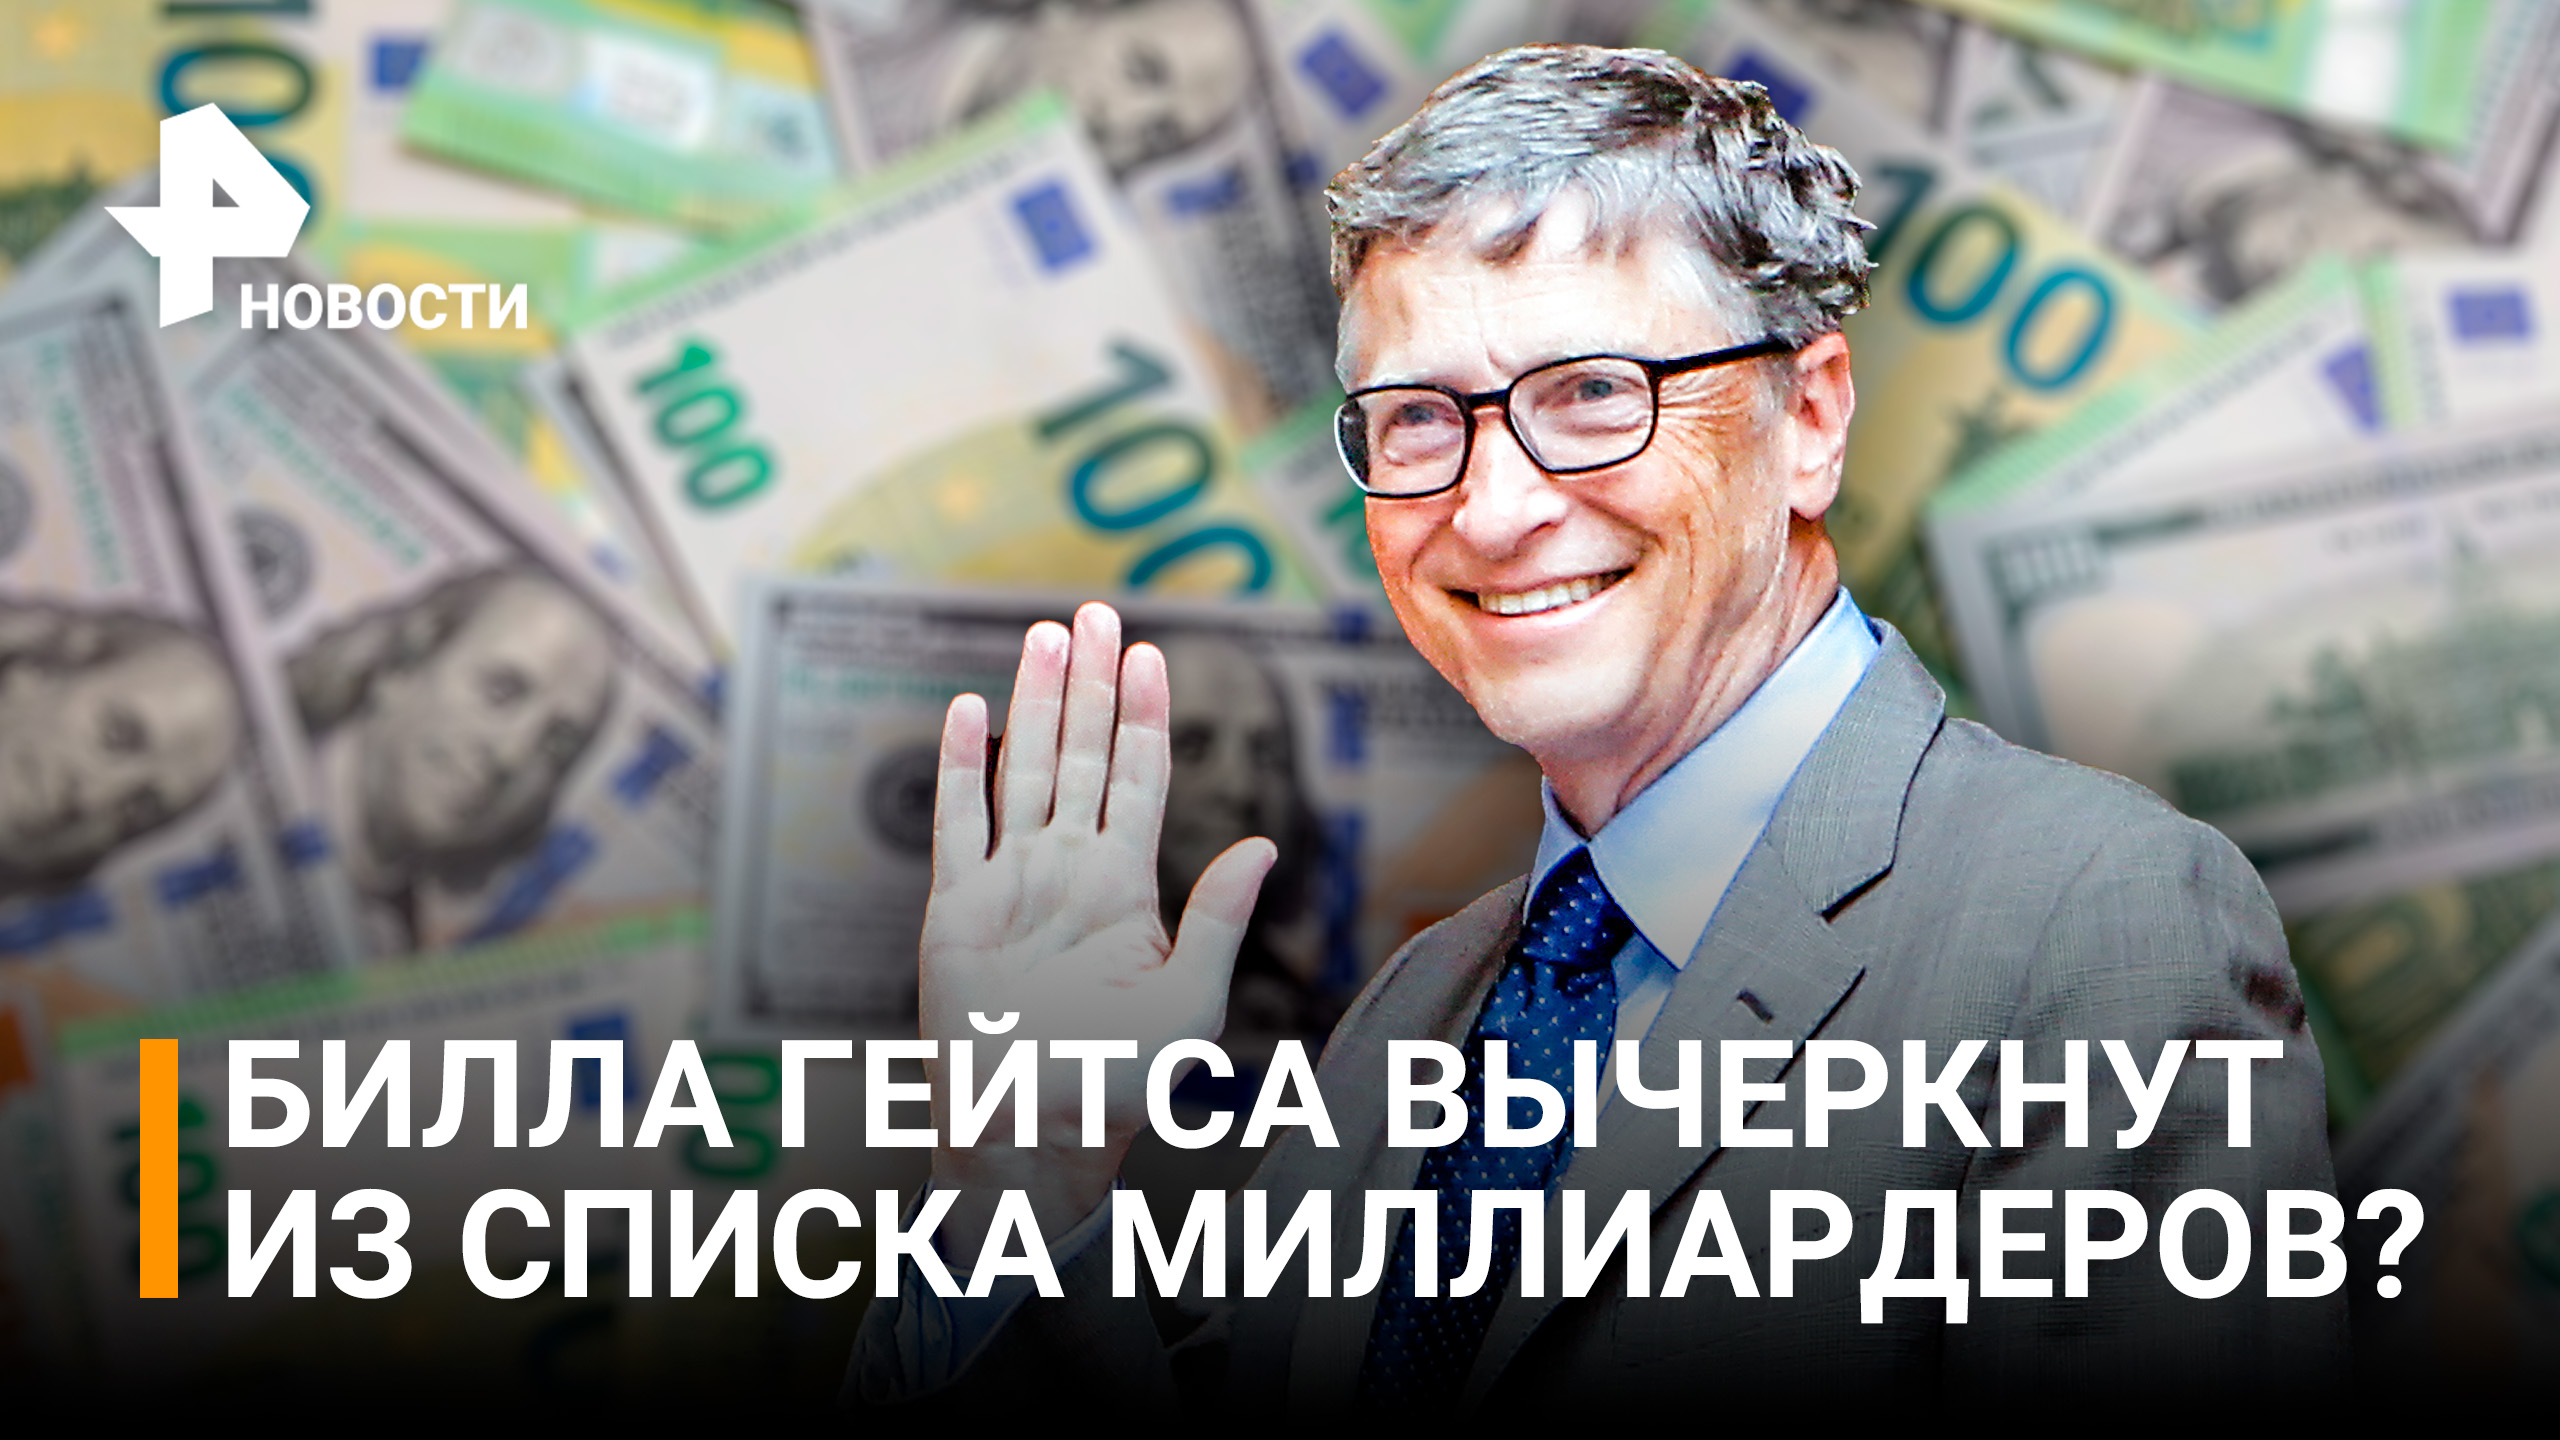 Билл Гейтс отдаст почти все свое состояние на благотворительность / РЕН Новости